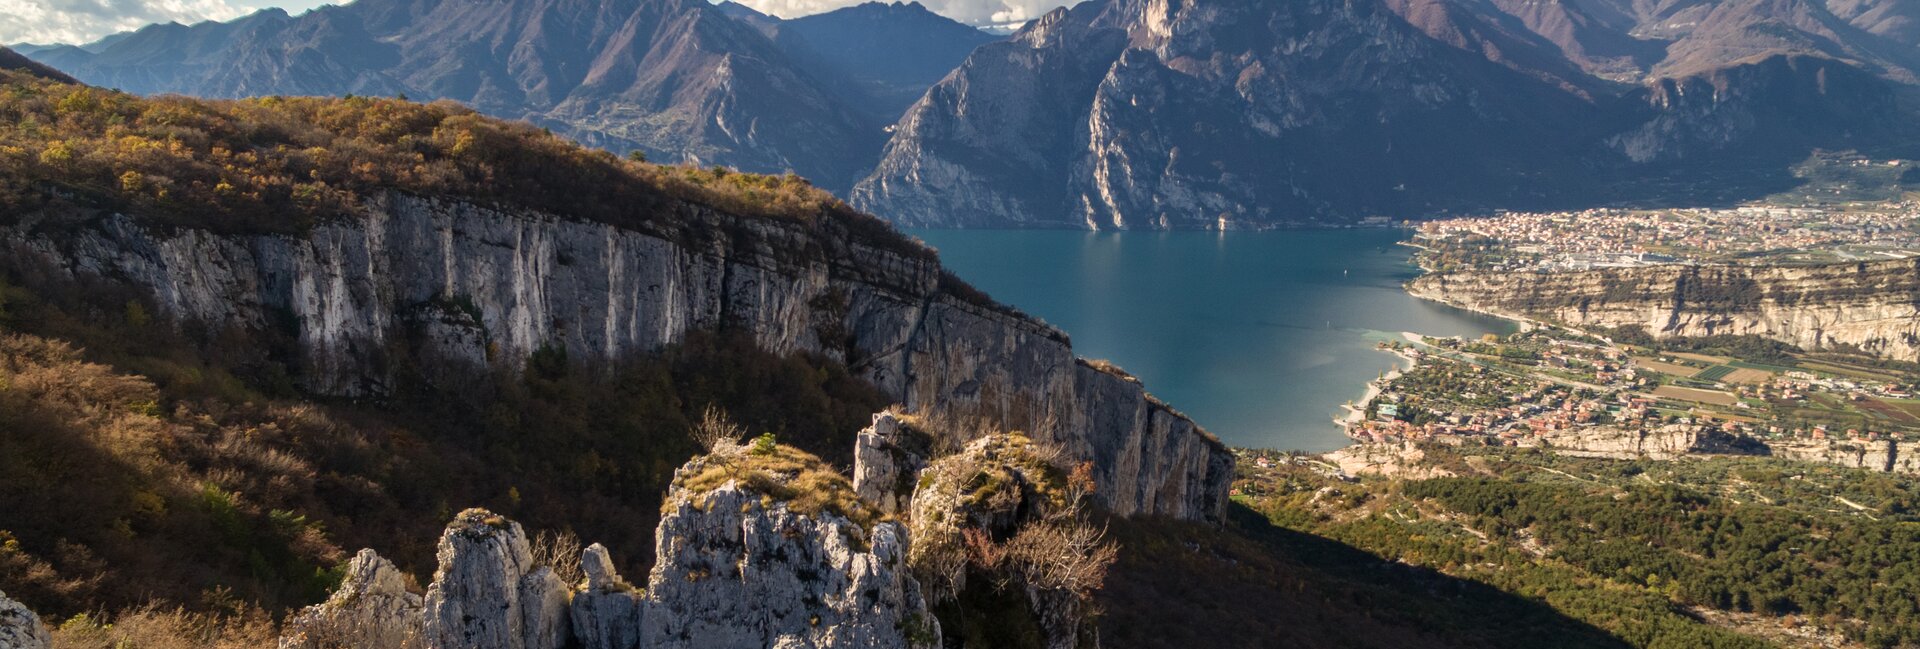 Garda Trentino, Comano Terme, Valle di Ledro en Valle dei Laghi